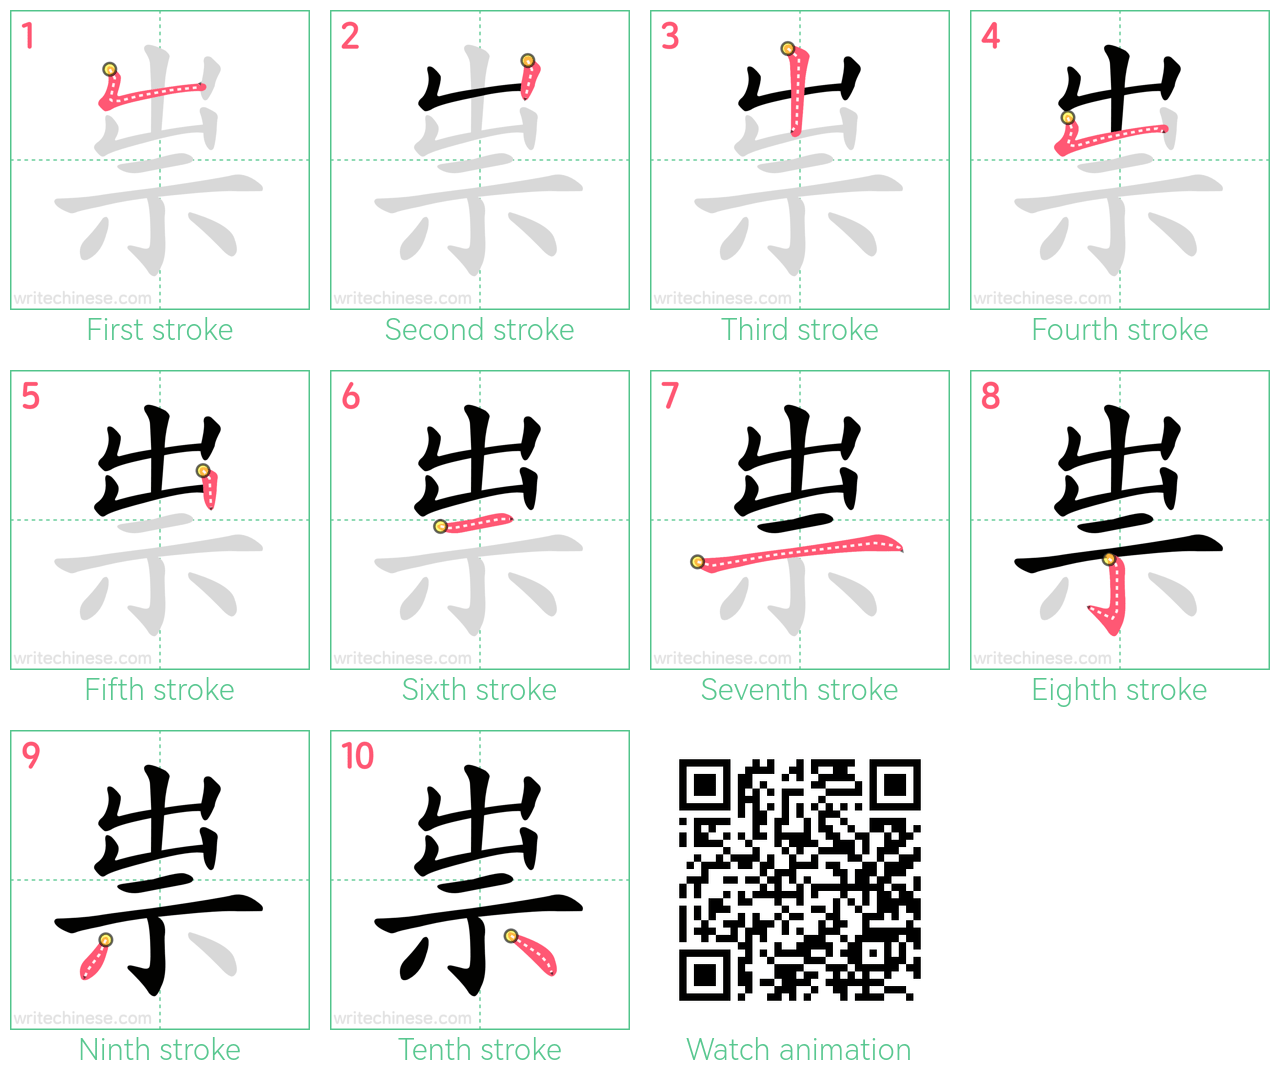 祟 step-by-step stroke order diagrams